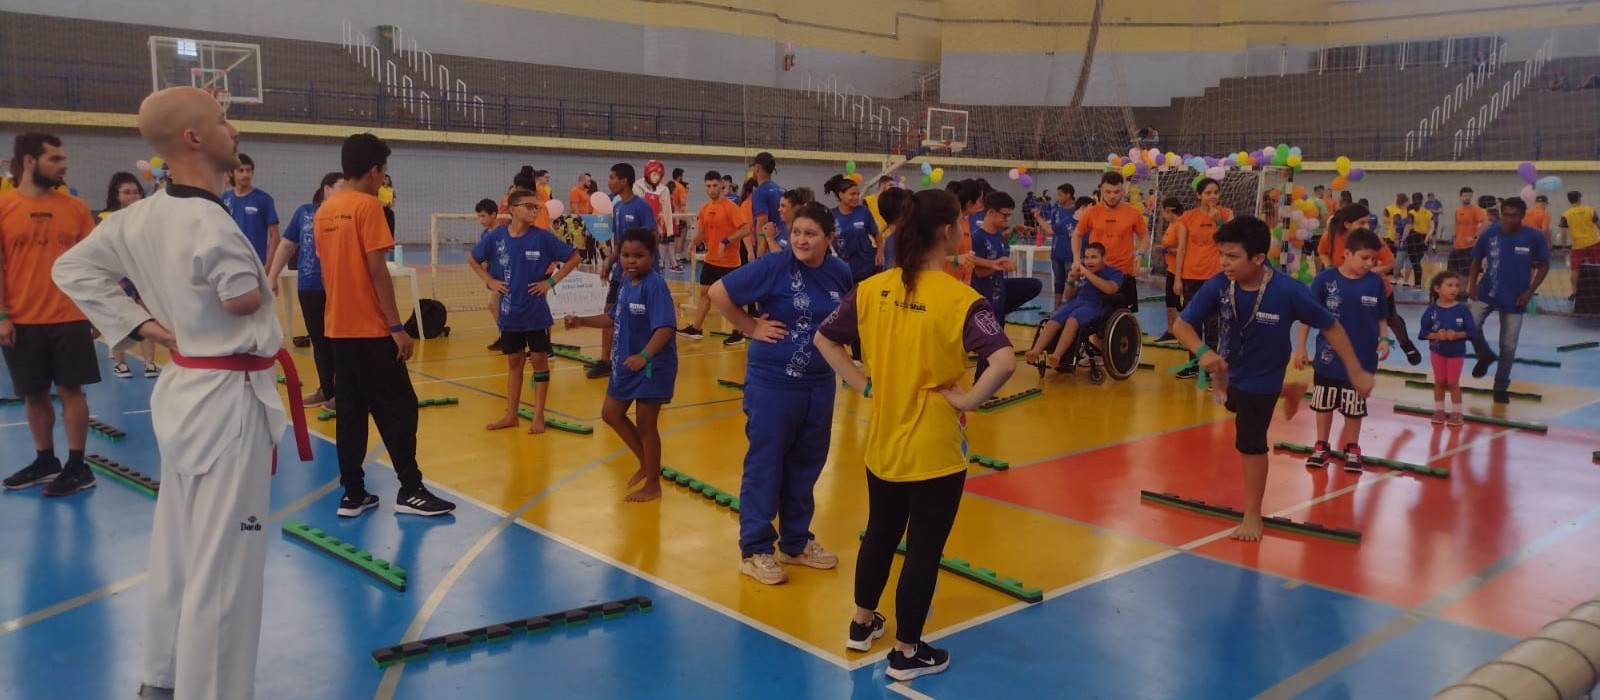 Festival Paralímpico promove inclusão de crianças e adolescentes por meio do esporte e recreação